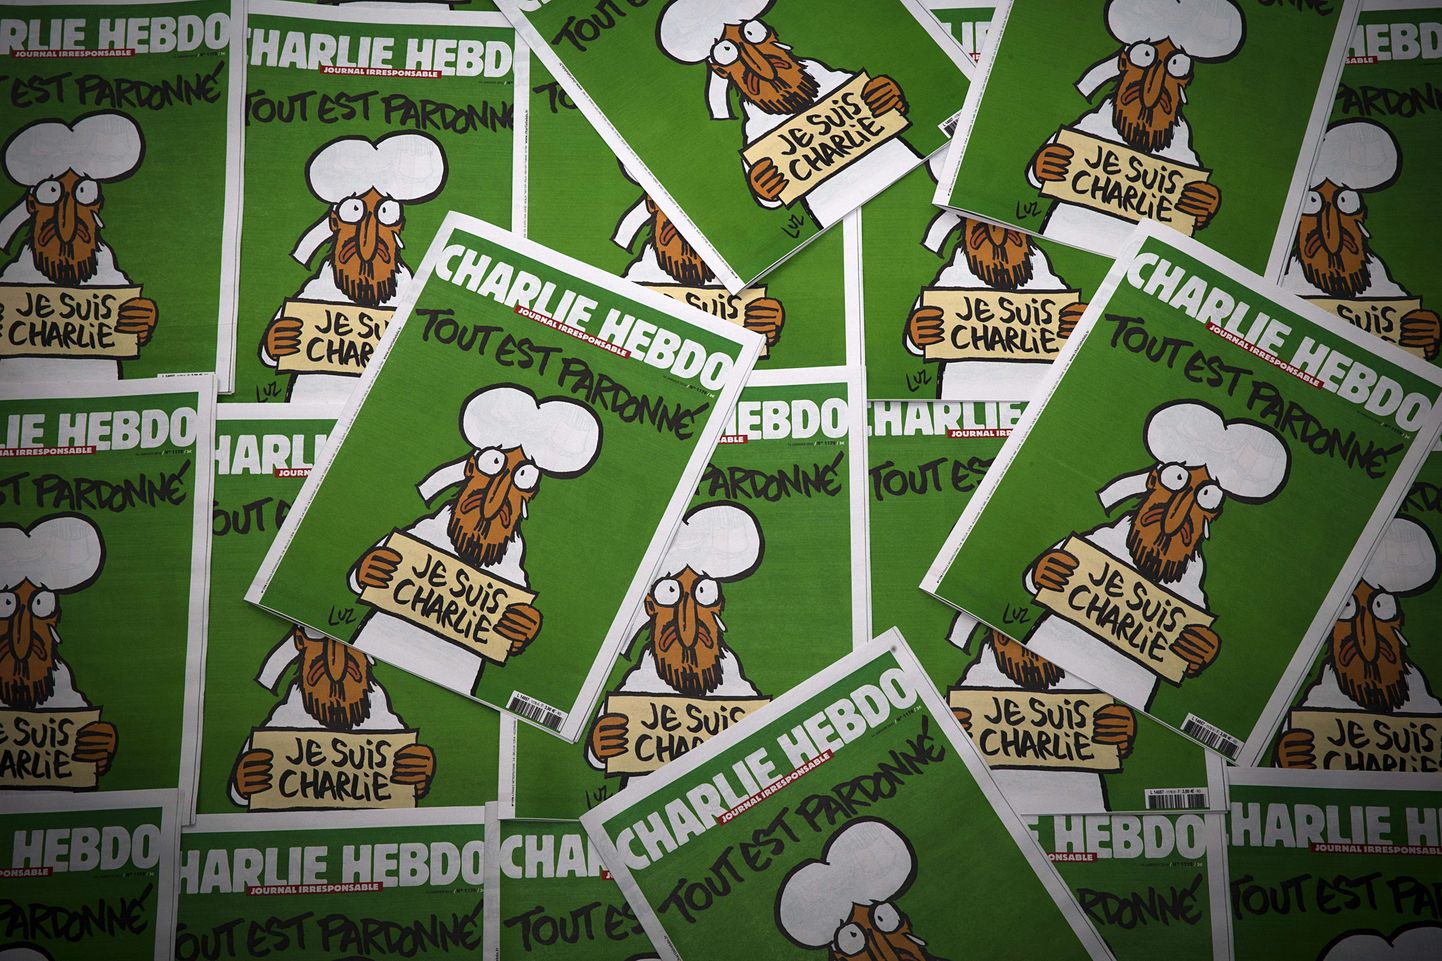 Первый после нападения на редакцию выпуск Charlie Hebdo, вышедший пятимиллионным тиражом.